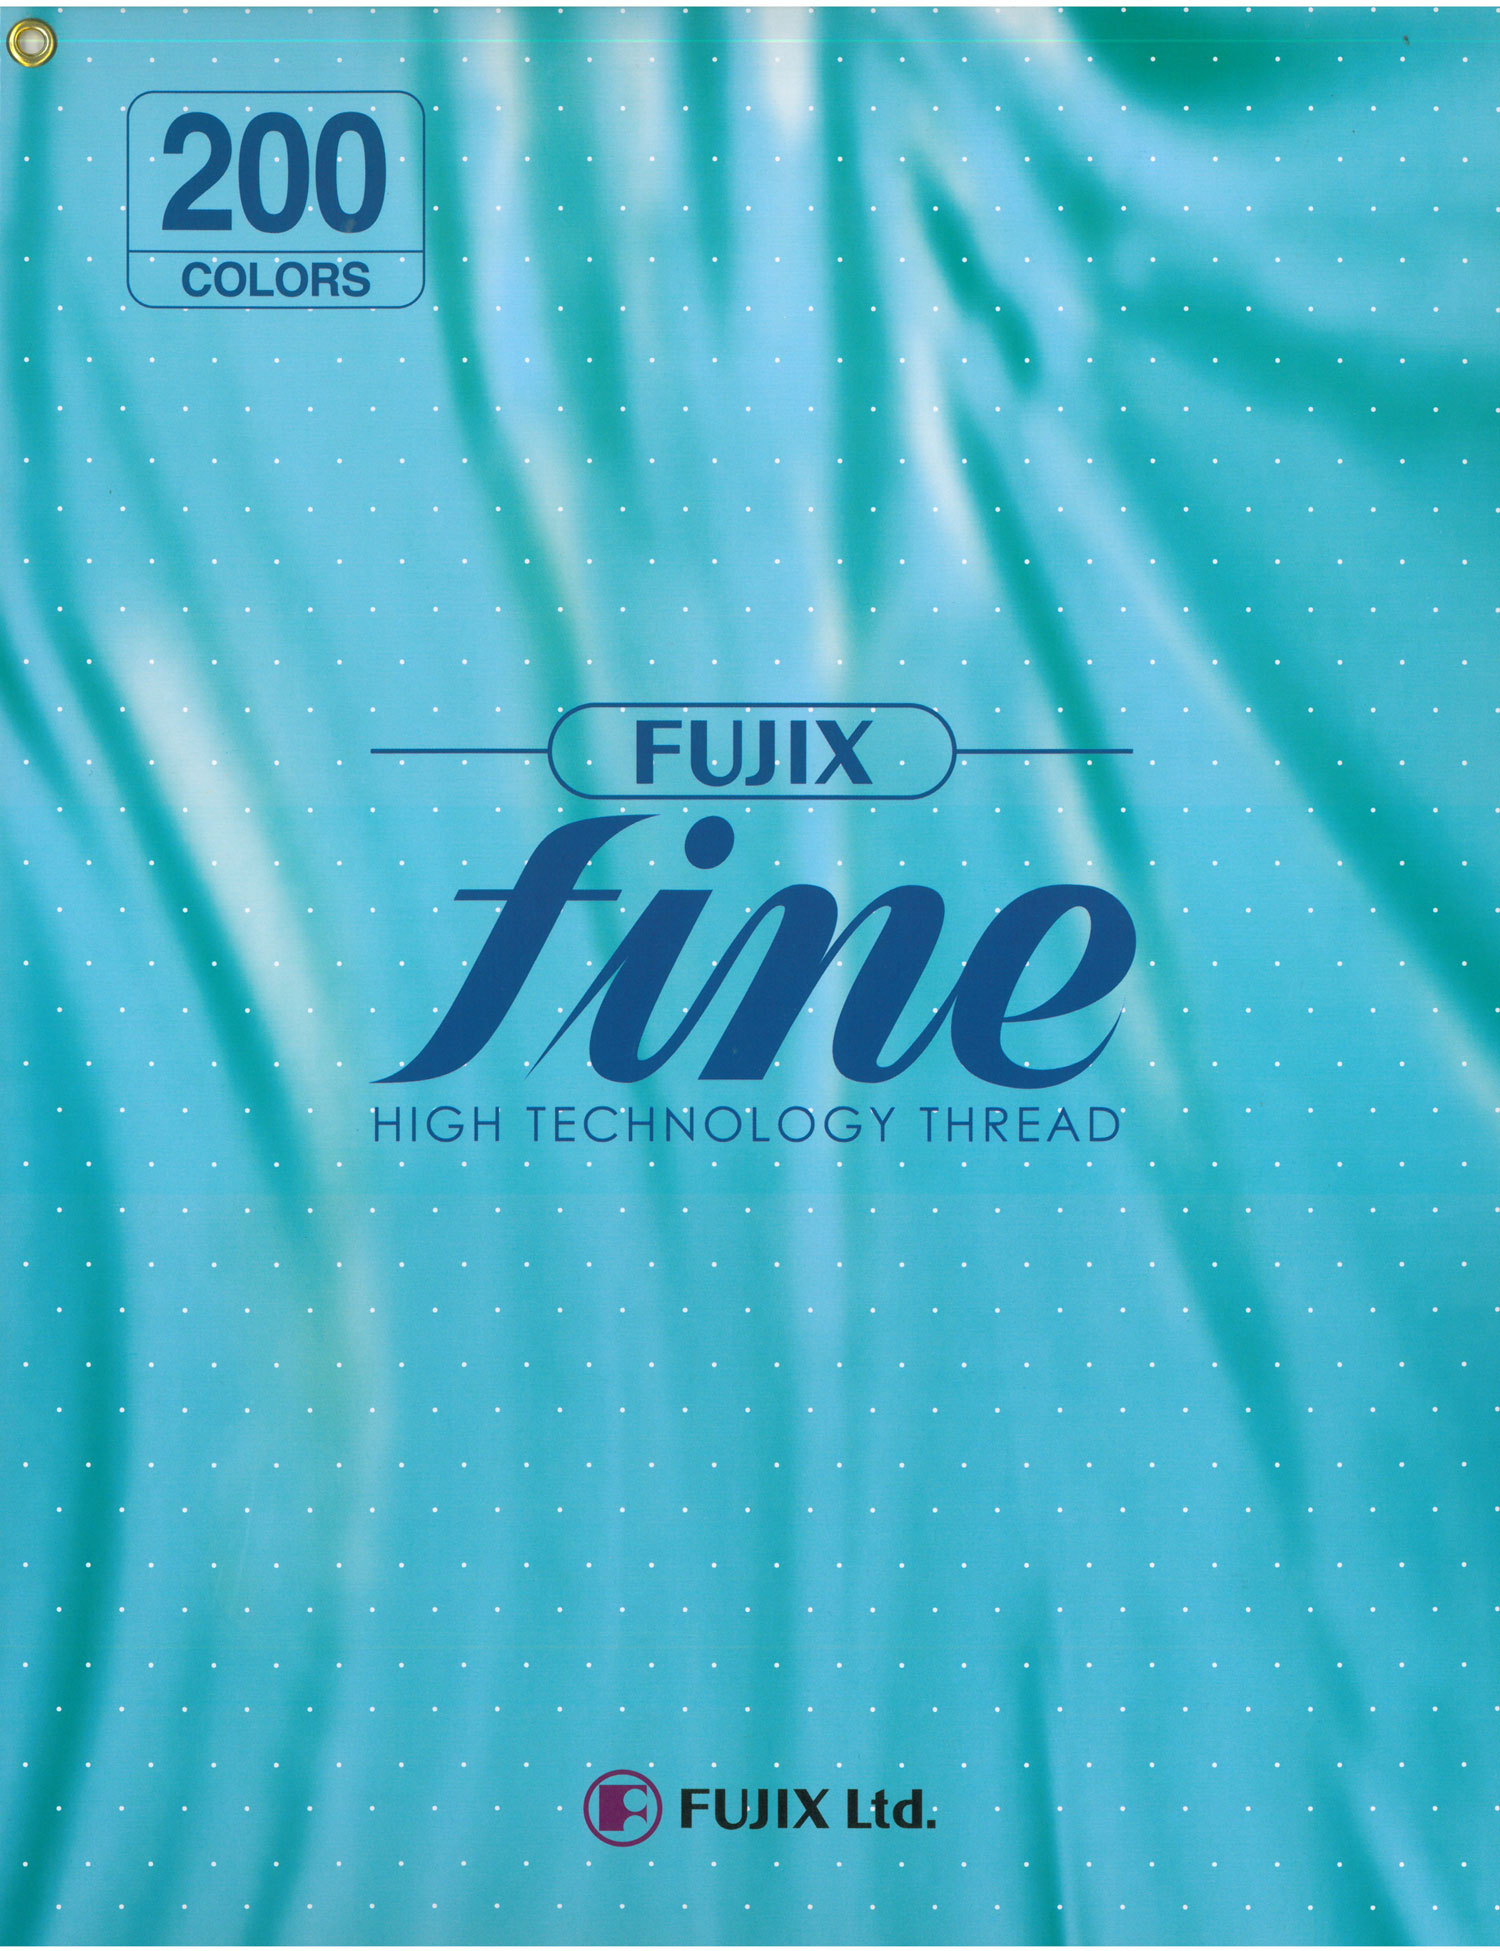 ファイン 手縫い糸 Fine Hand-sewn Thread (For Home Use) FUJIX